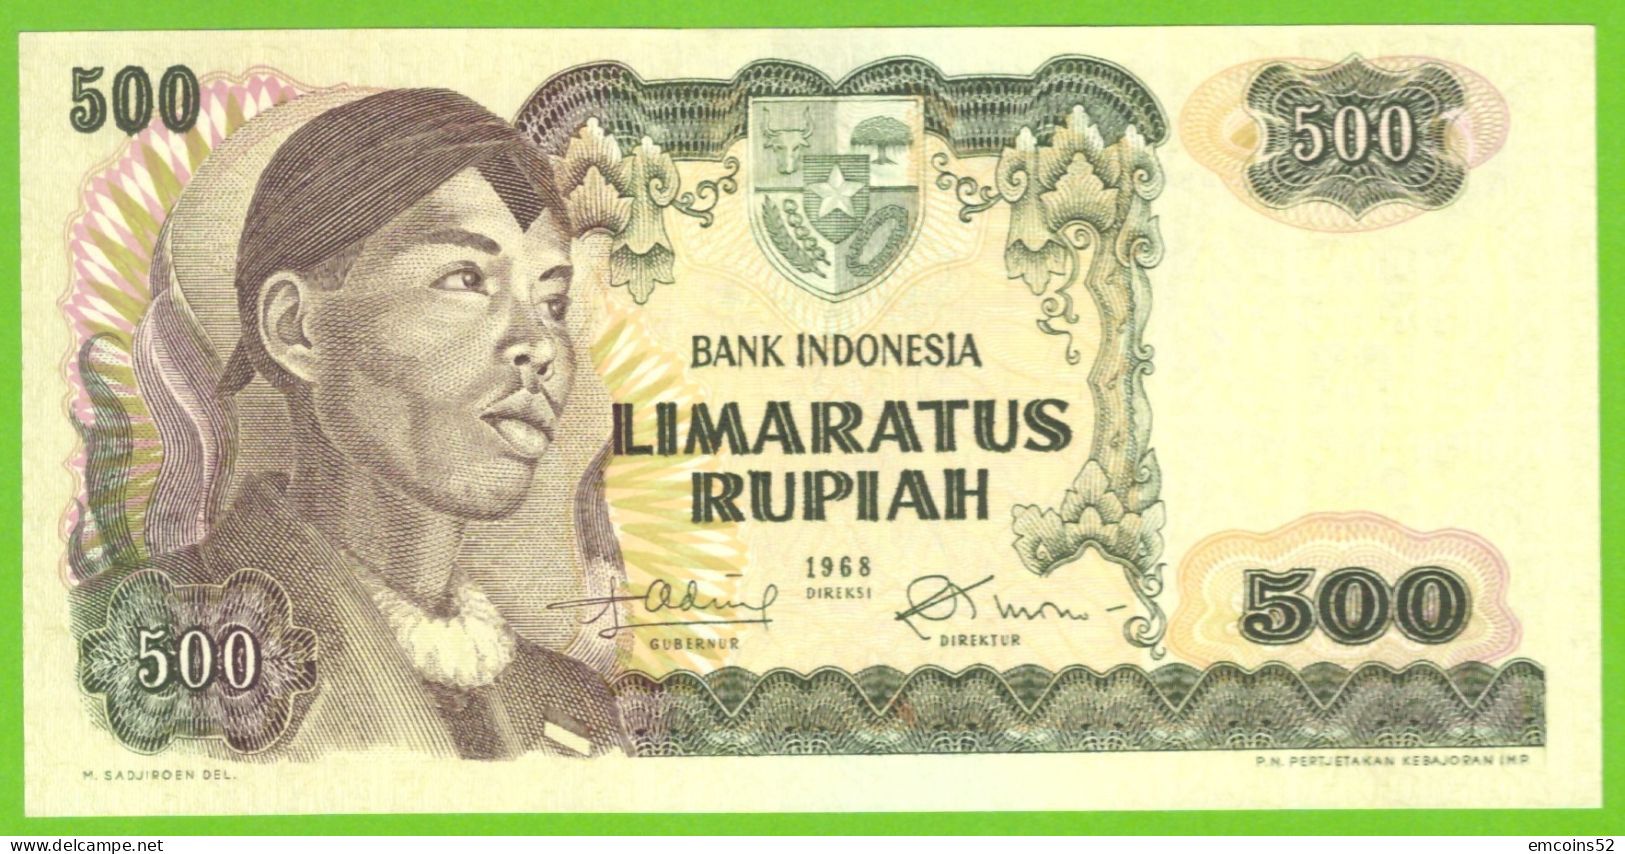 INDONESIA 500 RUPIAH 1968  P-109  UNC - Indonesië